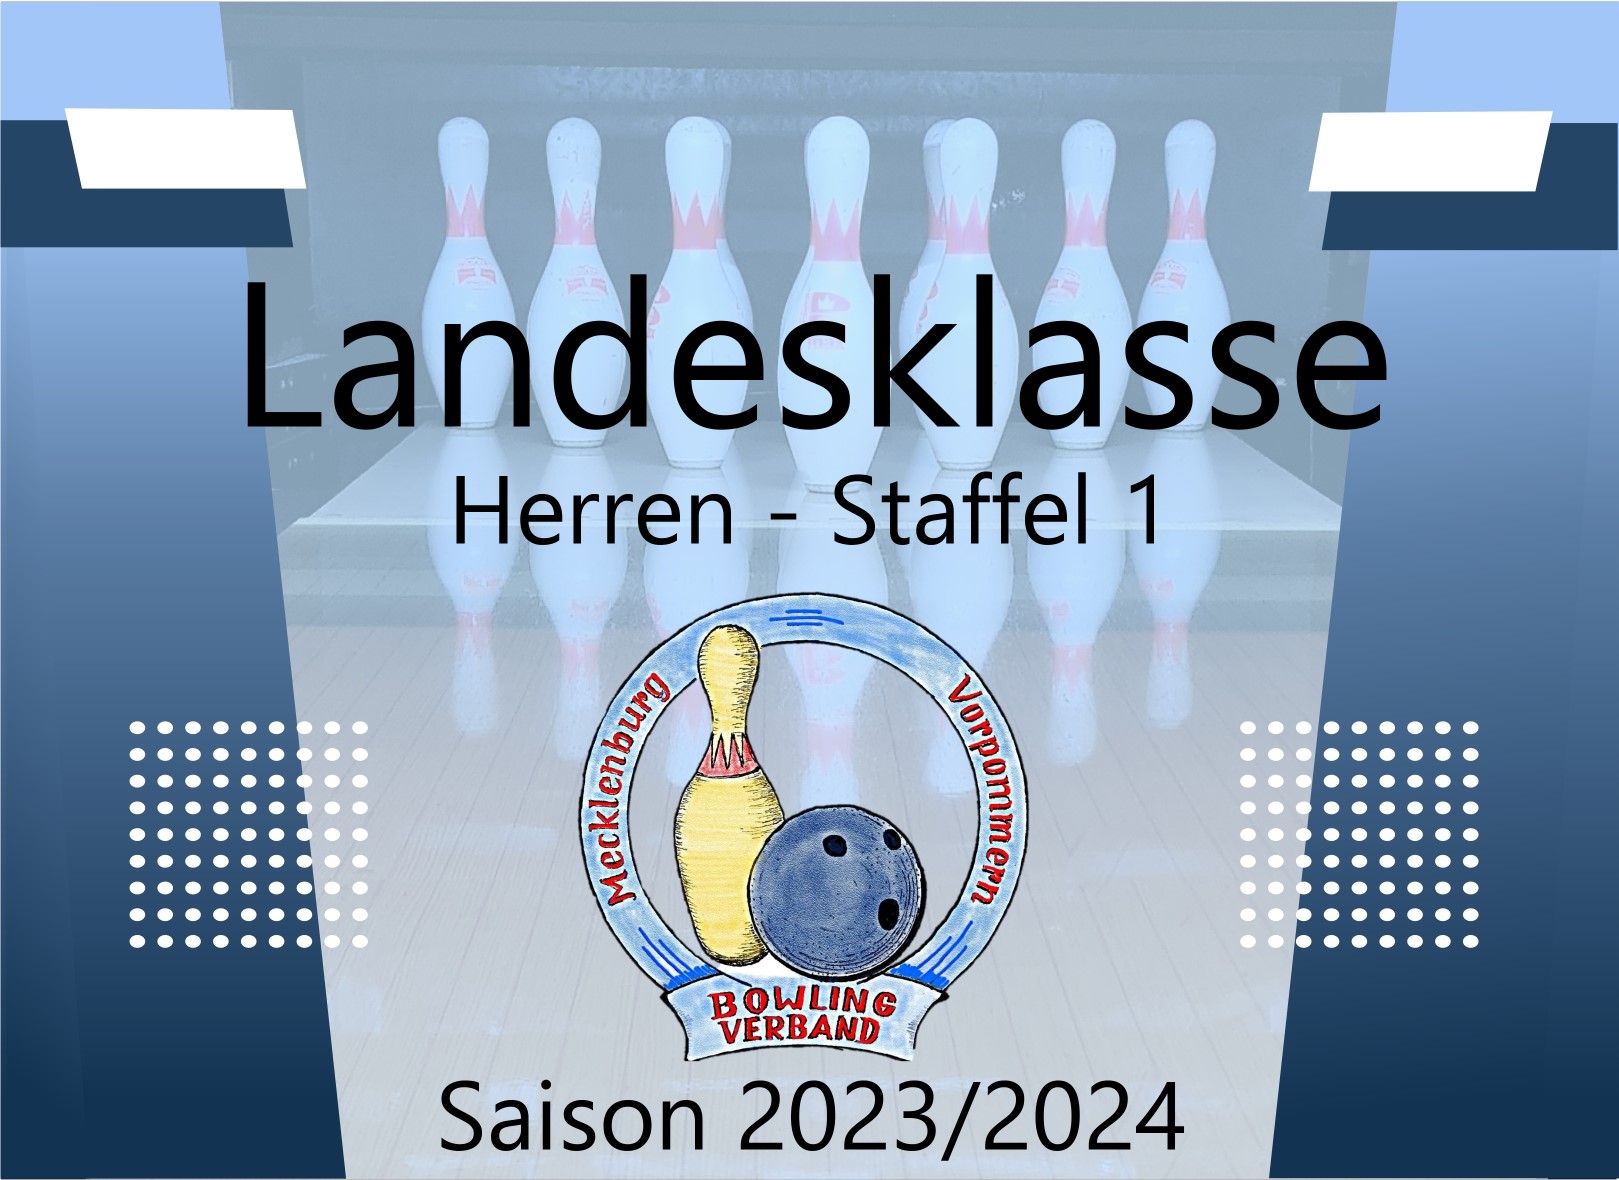 Landesklasse Herren Staffel 1 - 6. Spieltag